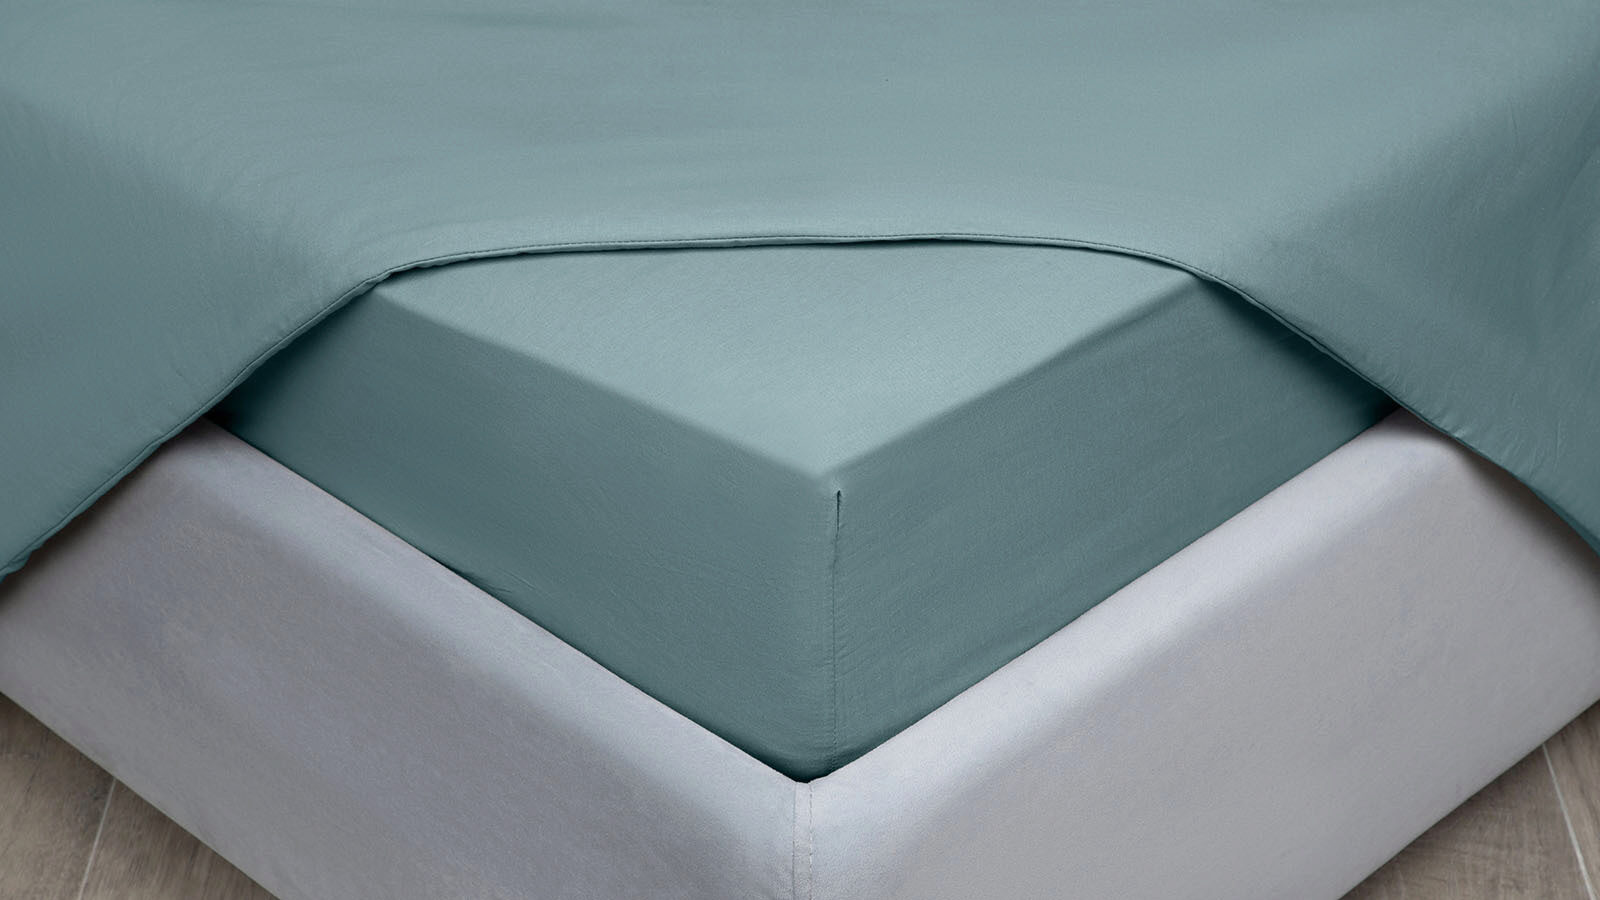 Простыня на резинке Comfort Cotton, цвет: Серо-голубой простыня sms стандарт 00 975 100 80 см голубой 50 шт